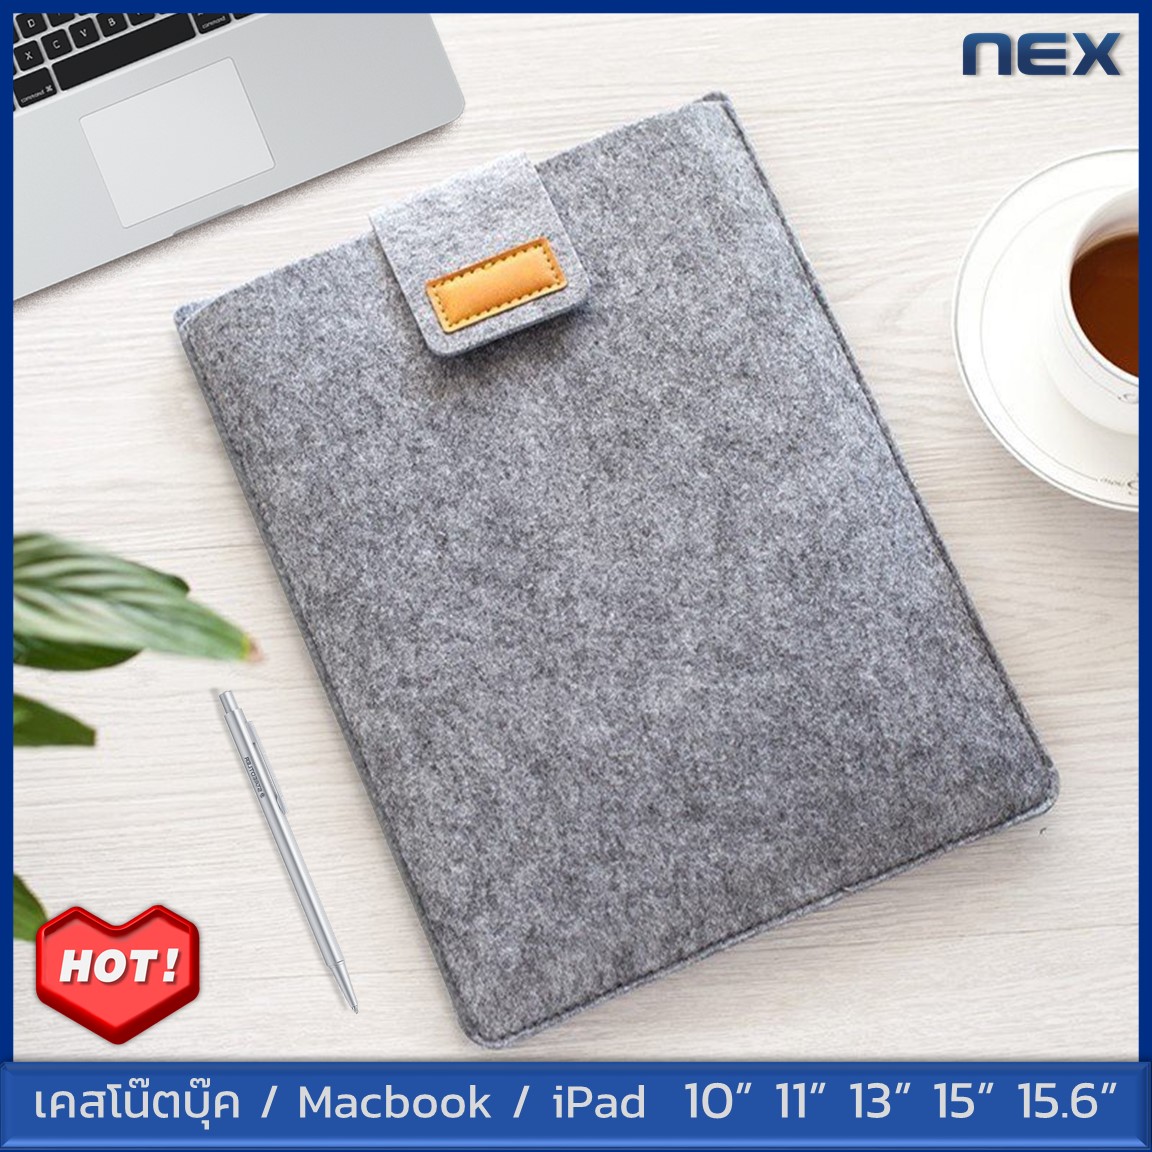 NEX กระเป๋าโน๊ตบุ๊ค soft case เคสโน๊ตบุ๊ค เคสMacbook Air Pro ซองใส่โน๊ตบุ๊ค เคสสำหรับแล็ปท็อป ซองใส่ไอแพด แท็บเล็ต 10 11 13 15 15.6 นิ้ว